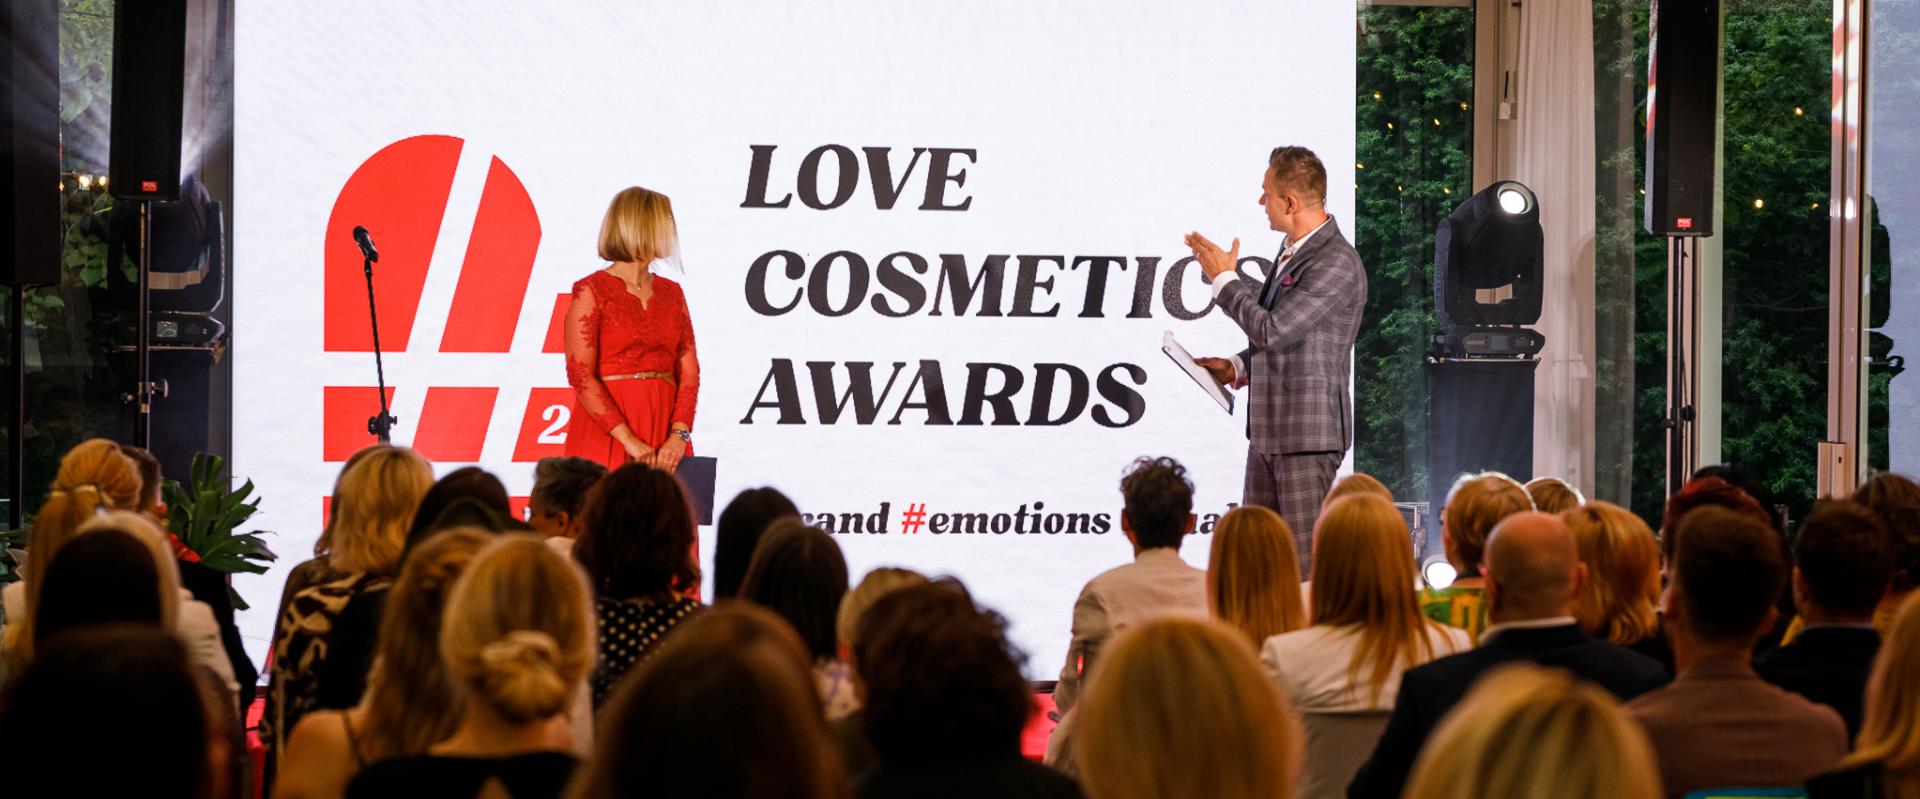 Love Cosmetics Awards – zasięg dyskusji o konkursie wygenerował w ciągu roku sześć milionów odsłon i zero negatywnego kontekstu